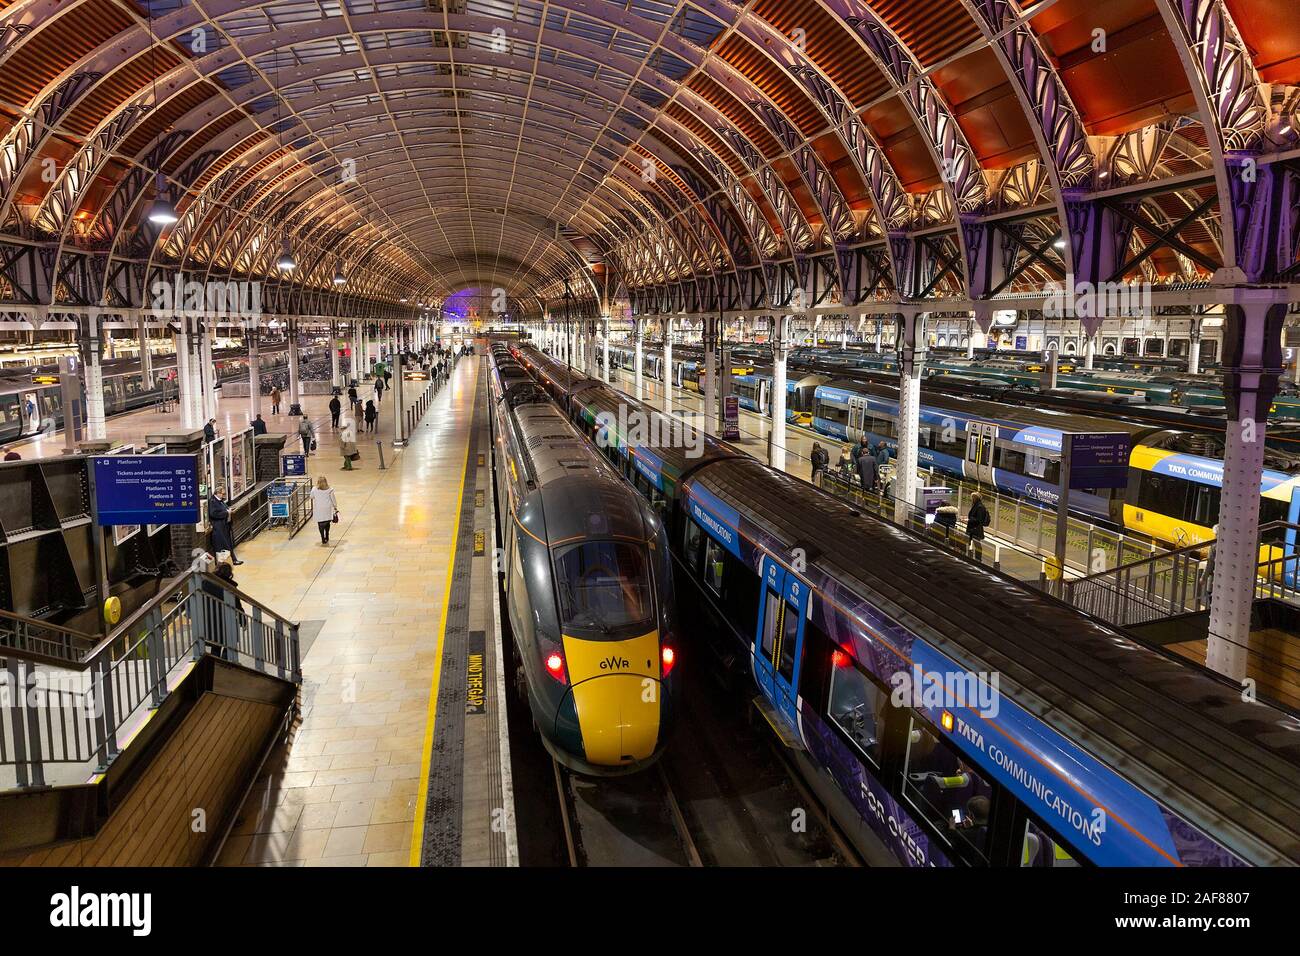 Londres, Reino Unido - 12 de diciembre de 2019 : Amplia vista de trenes esperando por los andenes de la estación de tren de Paddington, durante los importantes retrasos en los servicios. Foto de stock